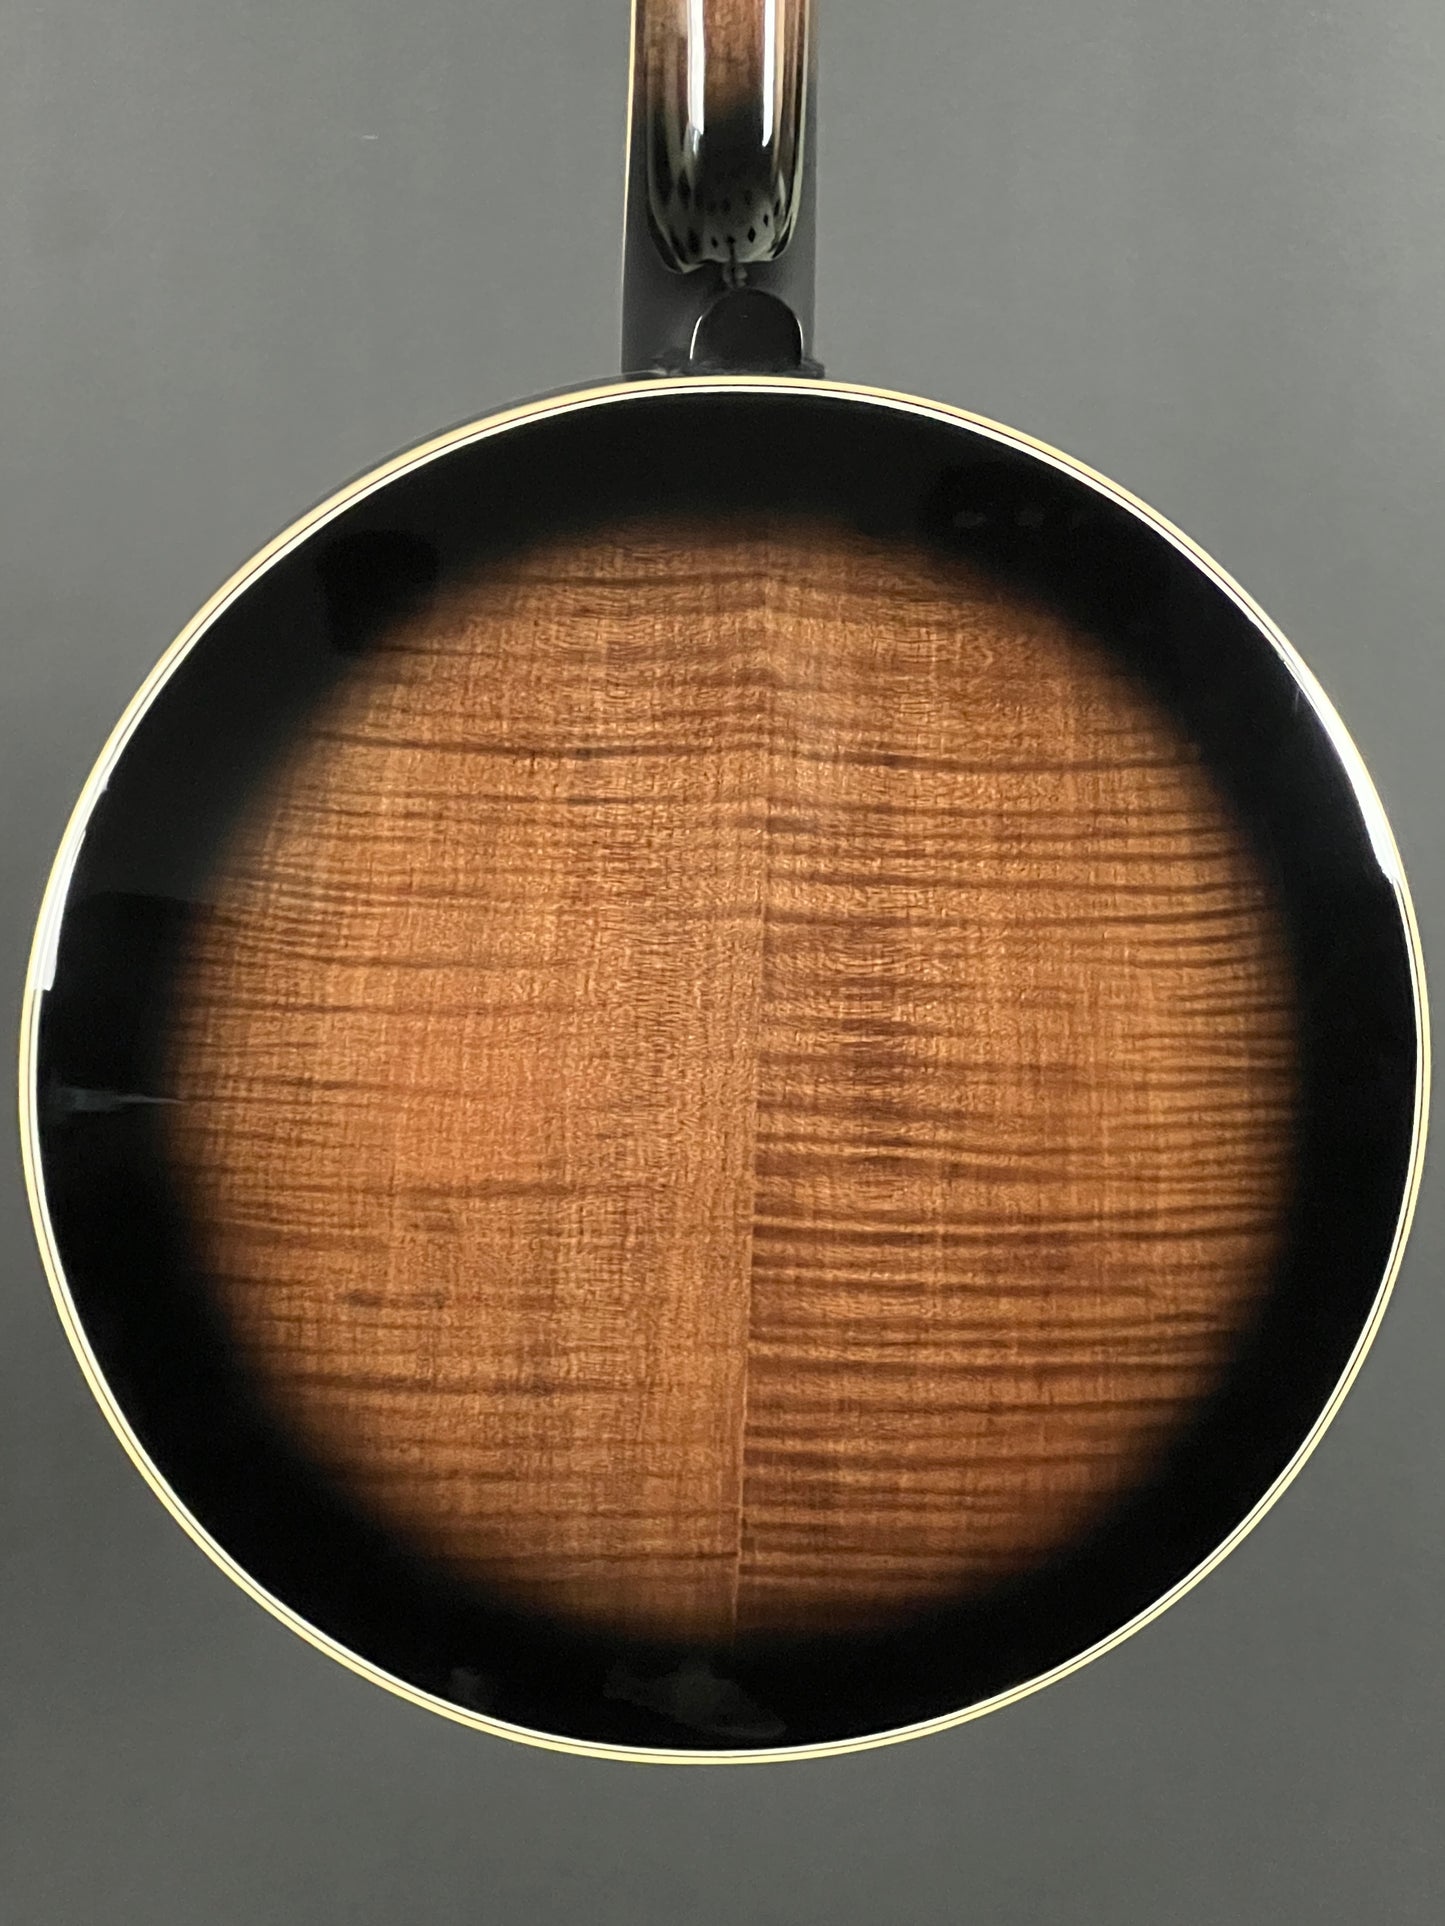 Mastertone Gold Tone Orange Blossom Banjo Arch Top with Case OB-250AT